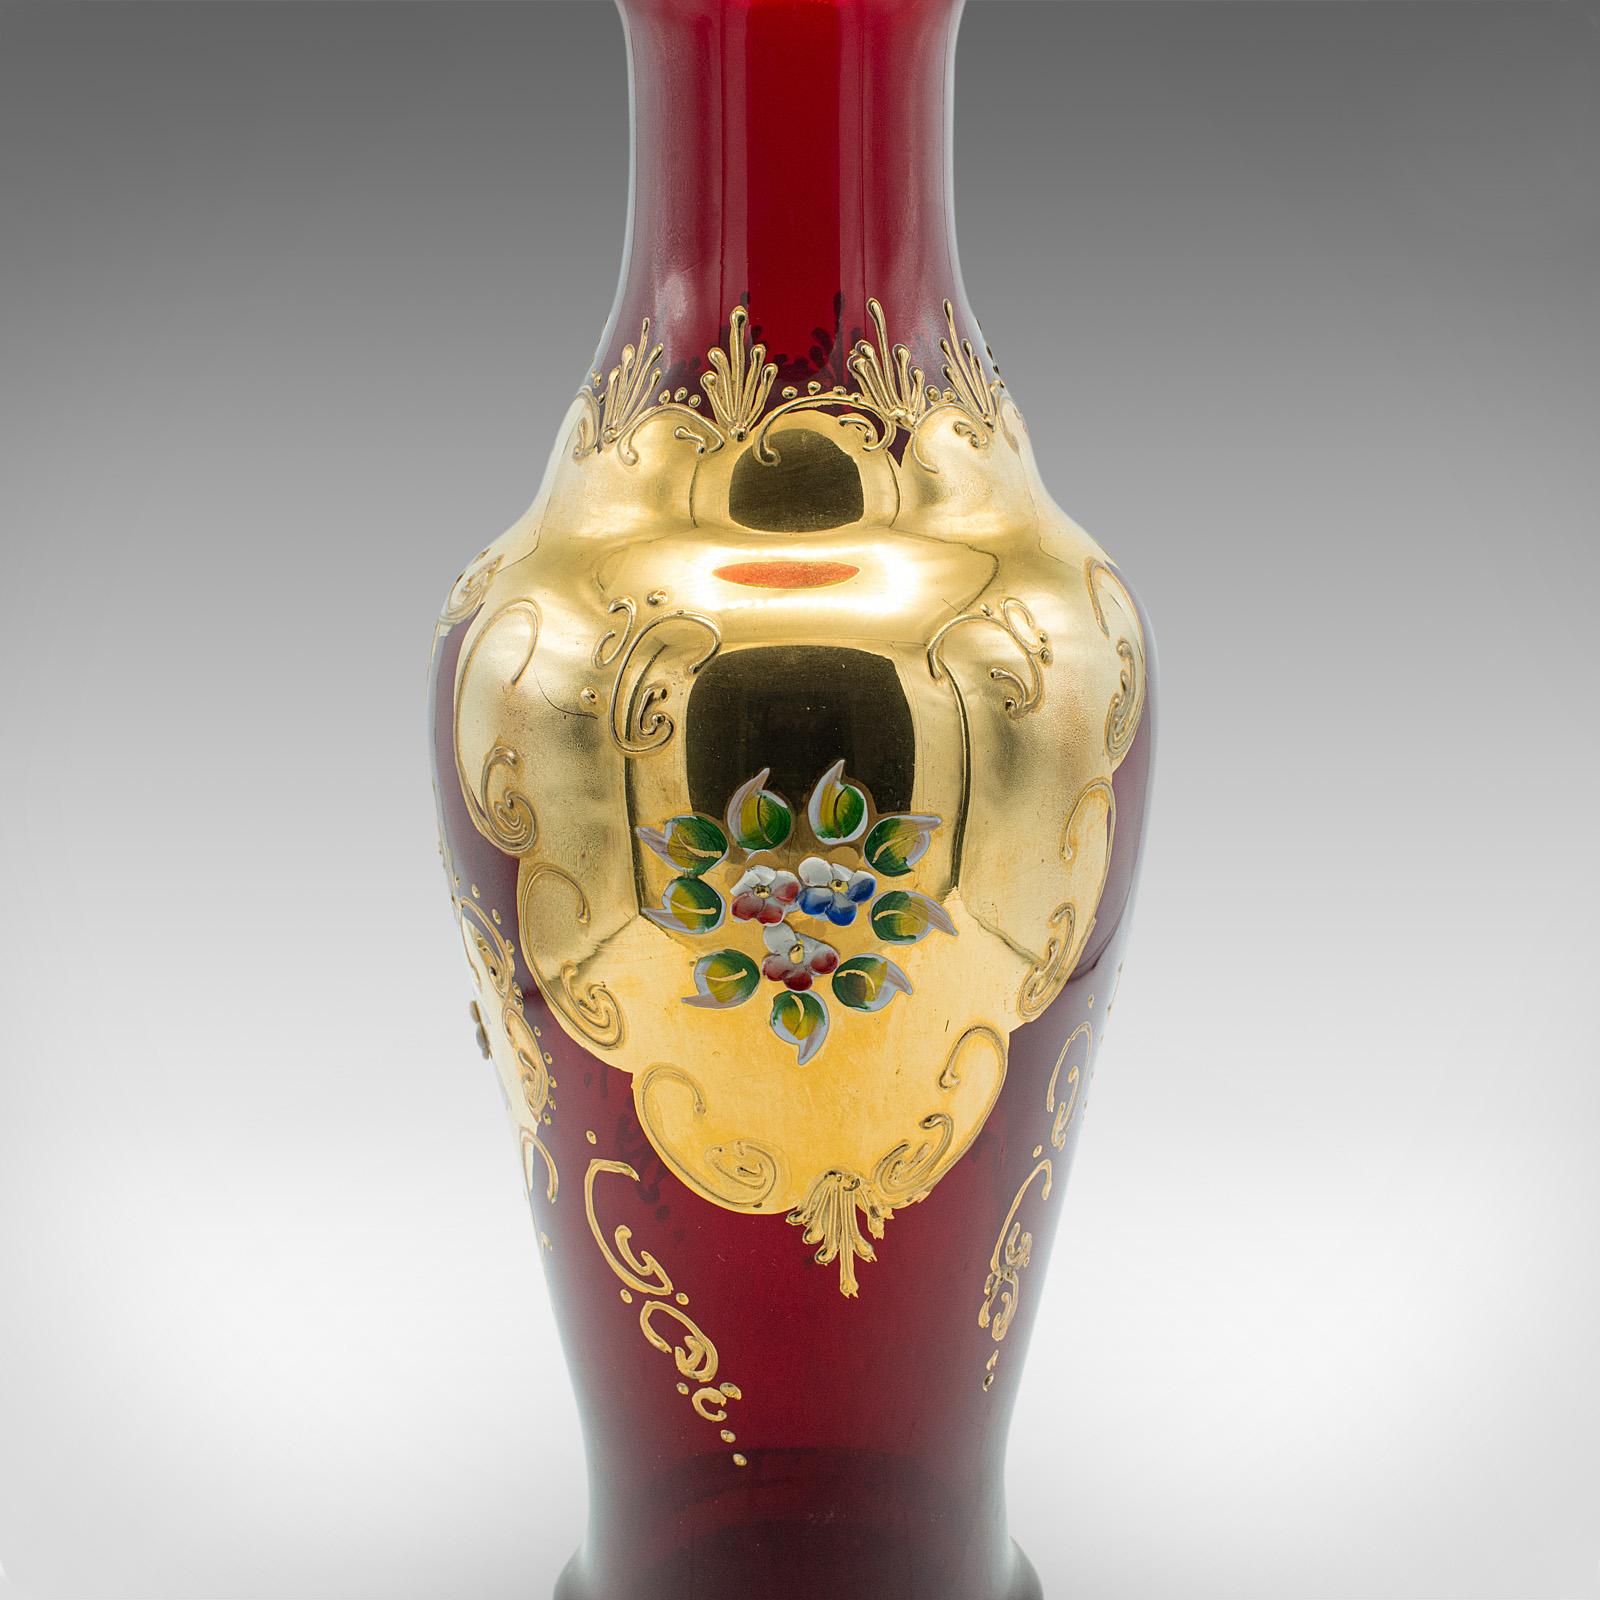 Vintage Venetian Show Vase, Italian Art Glass, Gilt, Decorative Flower Urn, 1970 For Sale 4